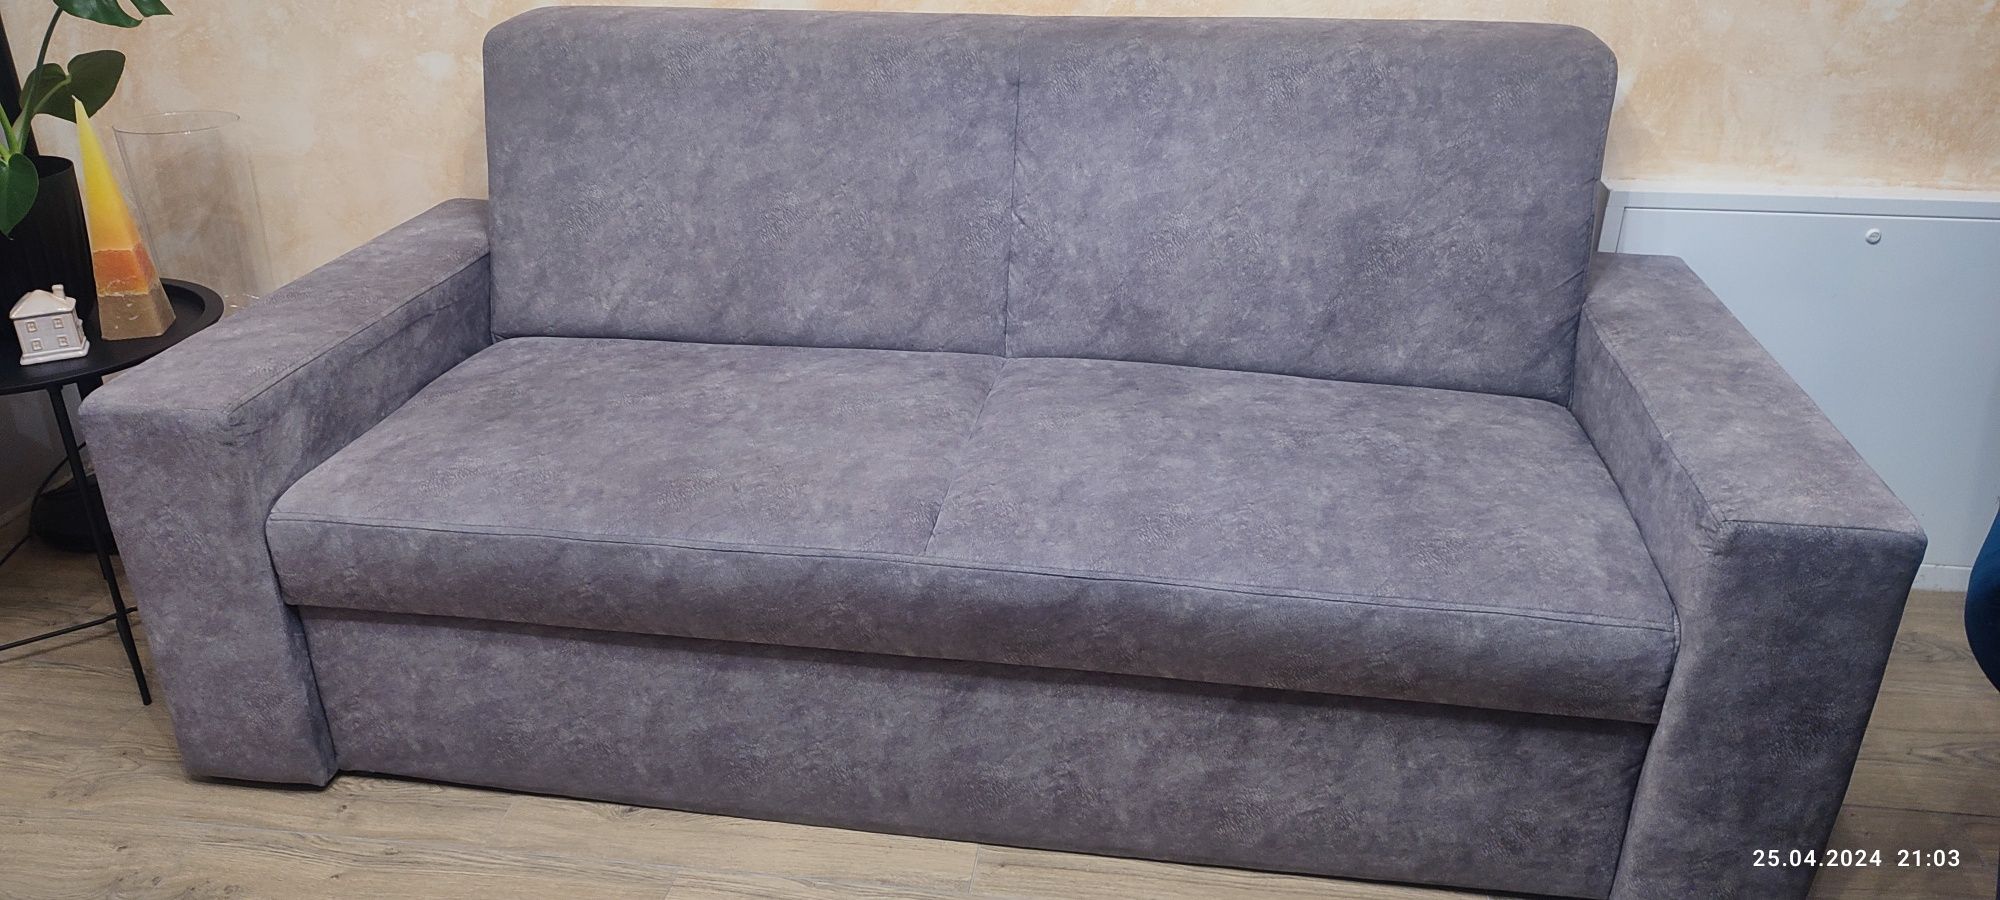 Sofa/kanapa do salonu